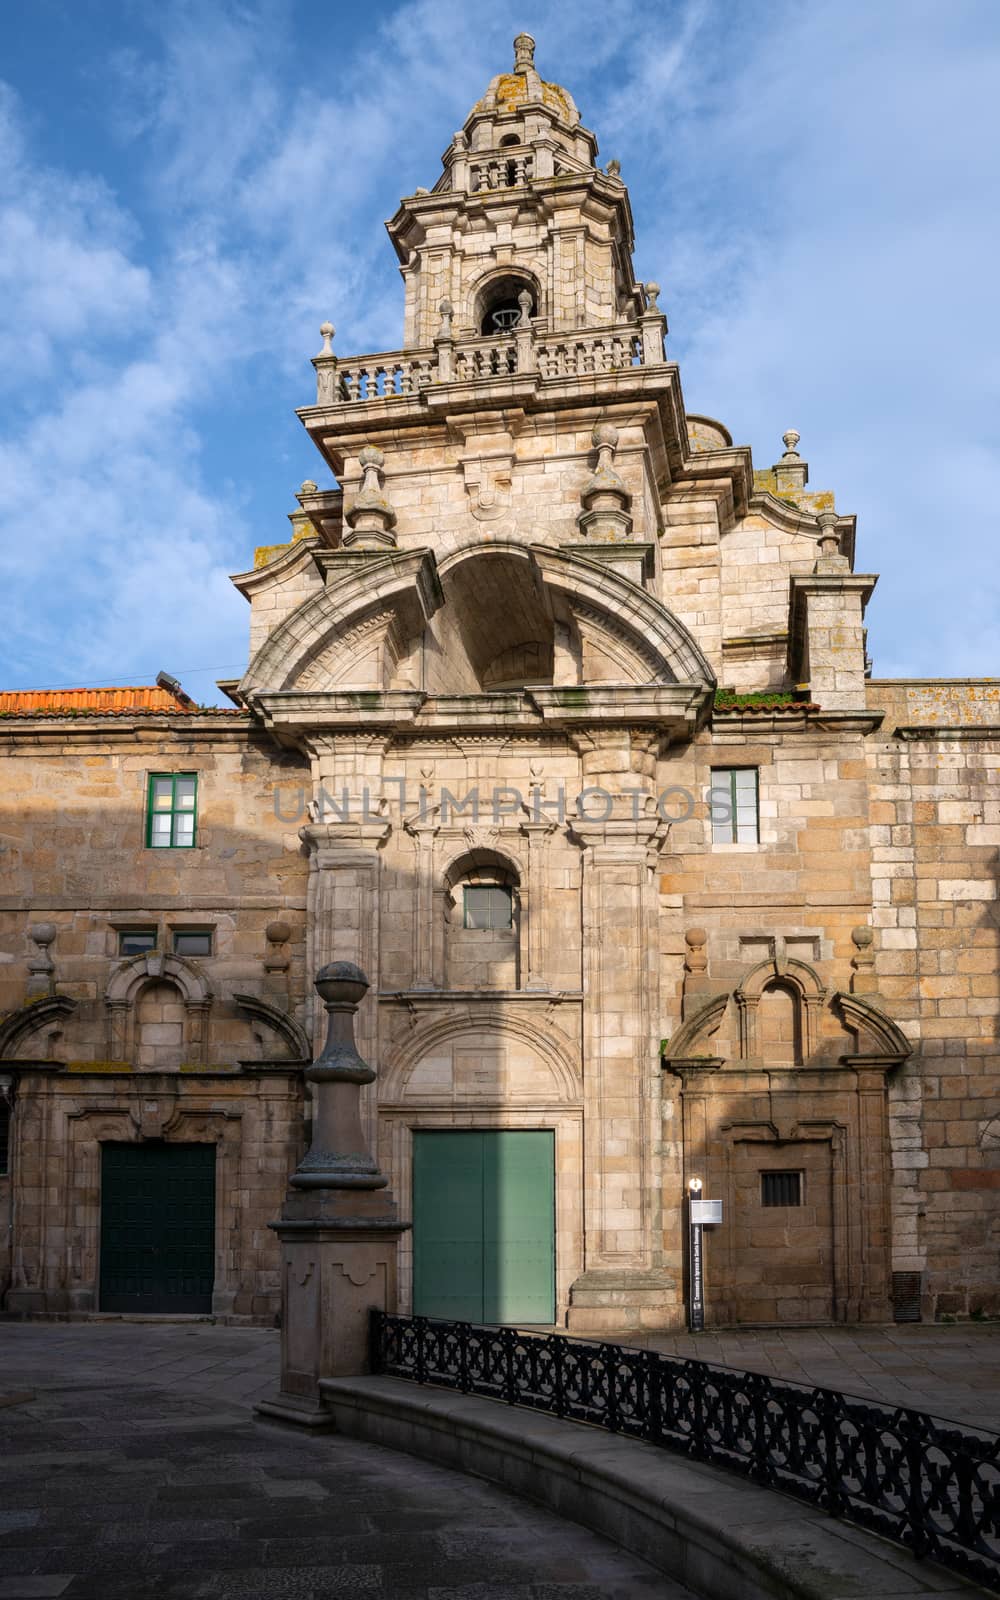 Iglesia de Santa Maria del Campo, A Coruna, Galicia, Spain by alfotokunst